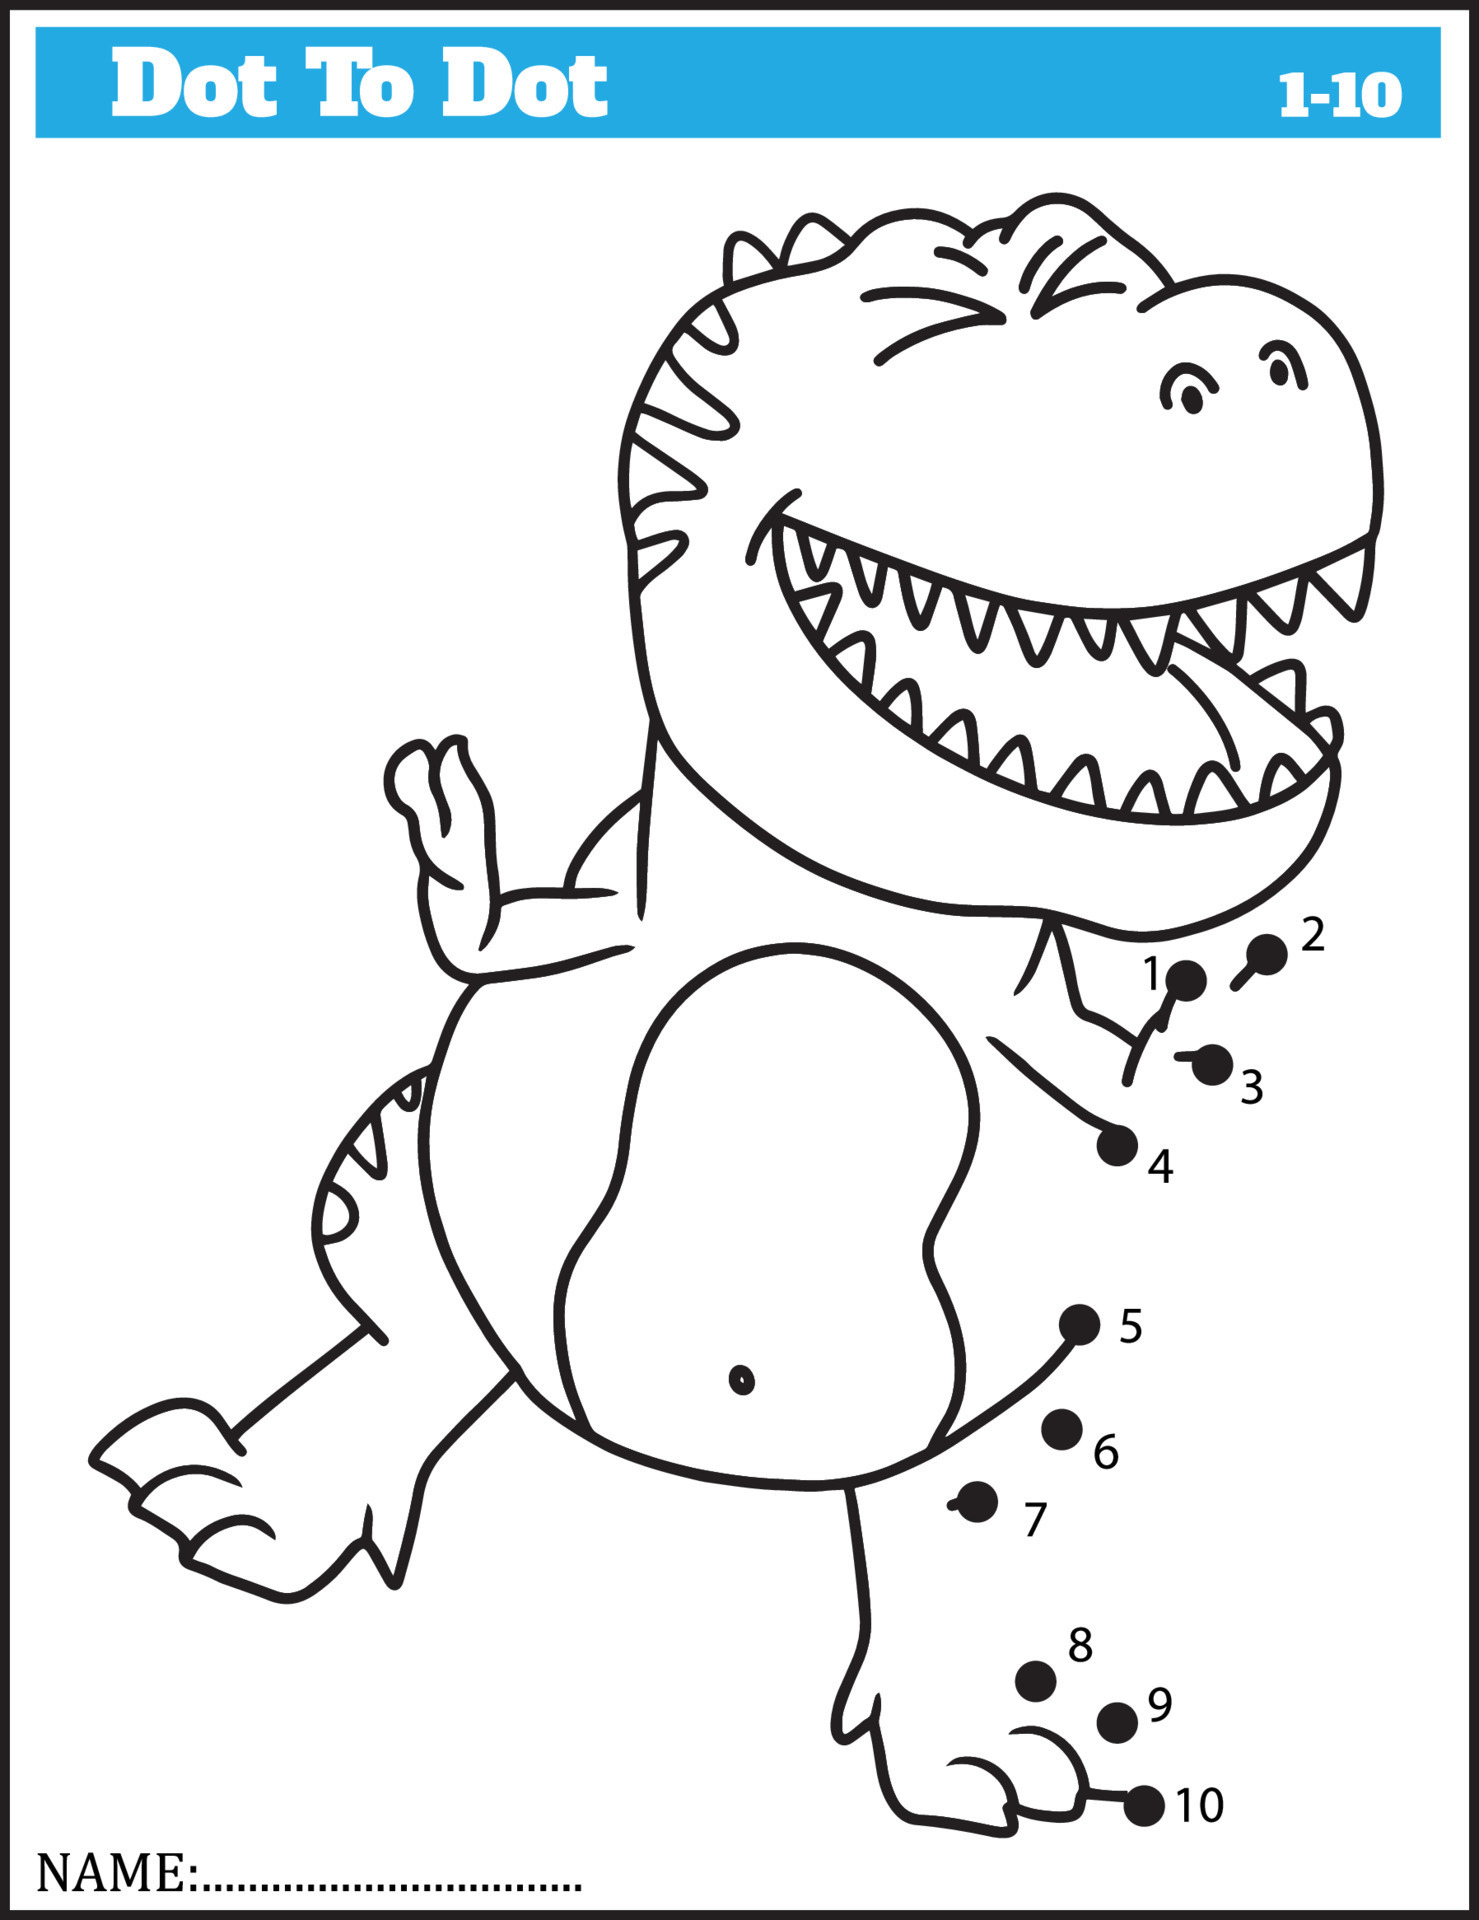 dinossauro engraçado dos desenhos animados. jogo ponto a ponto para  crianças, planilha de números. 10511196 Vetor no Vecteezy